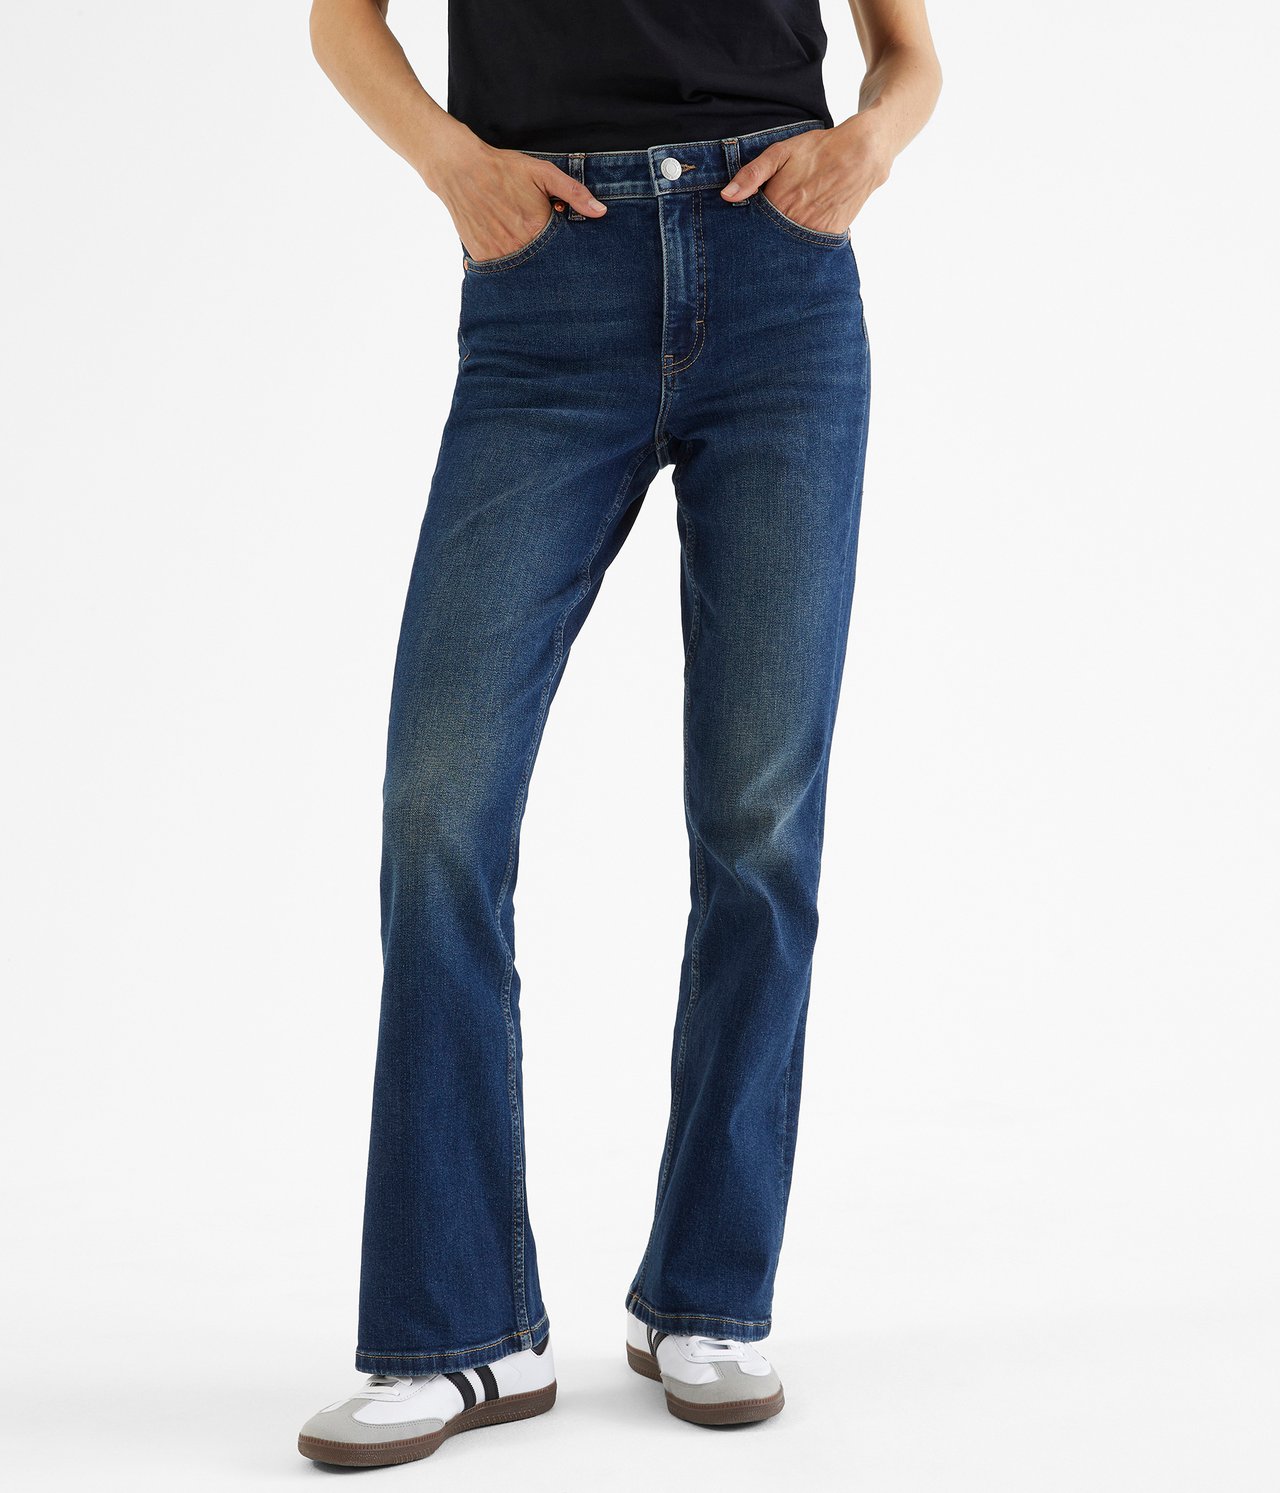 Flare jeans regular waist - Mörk denim - 2